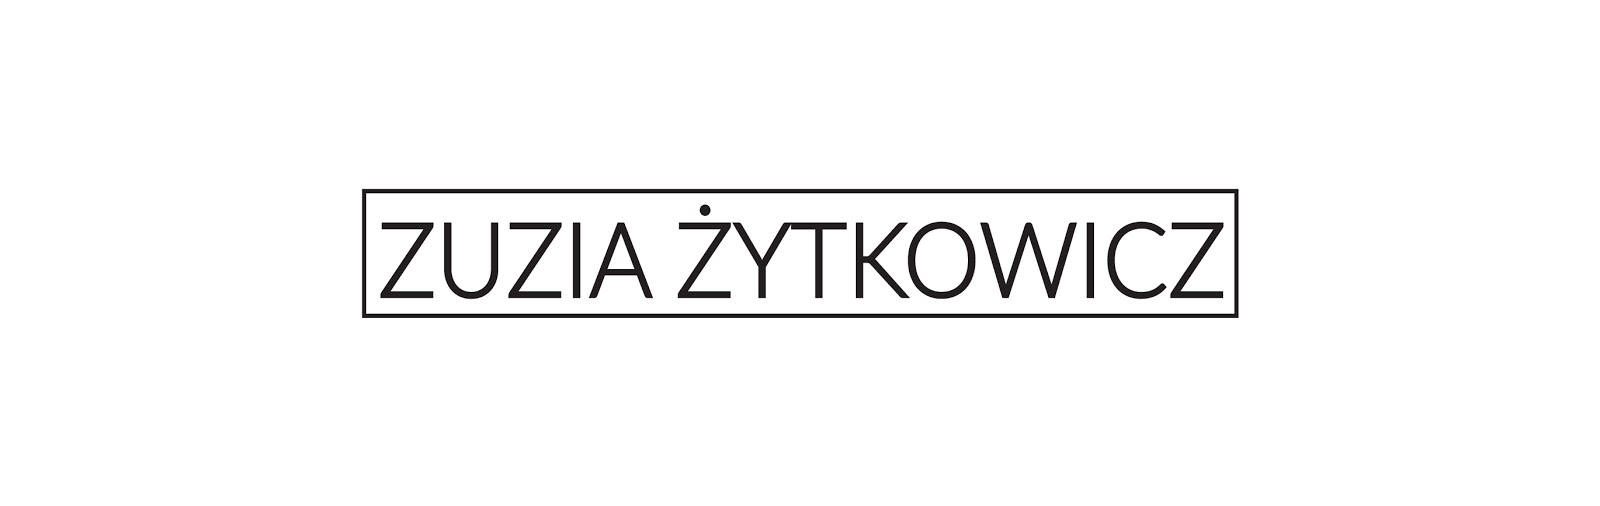 Zuzia Żytkowicz